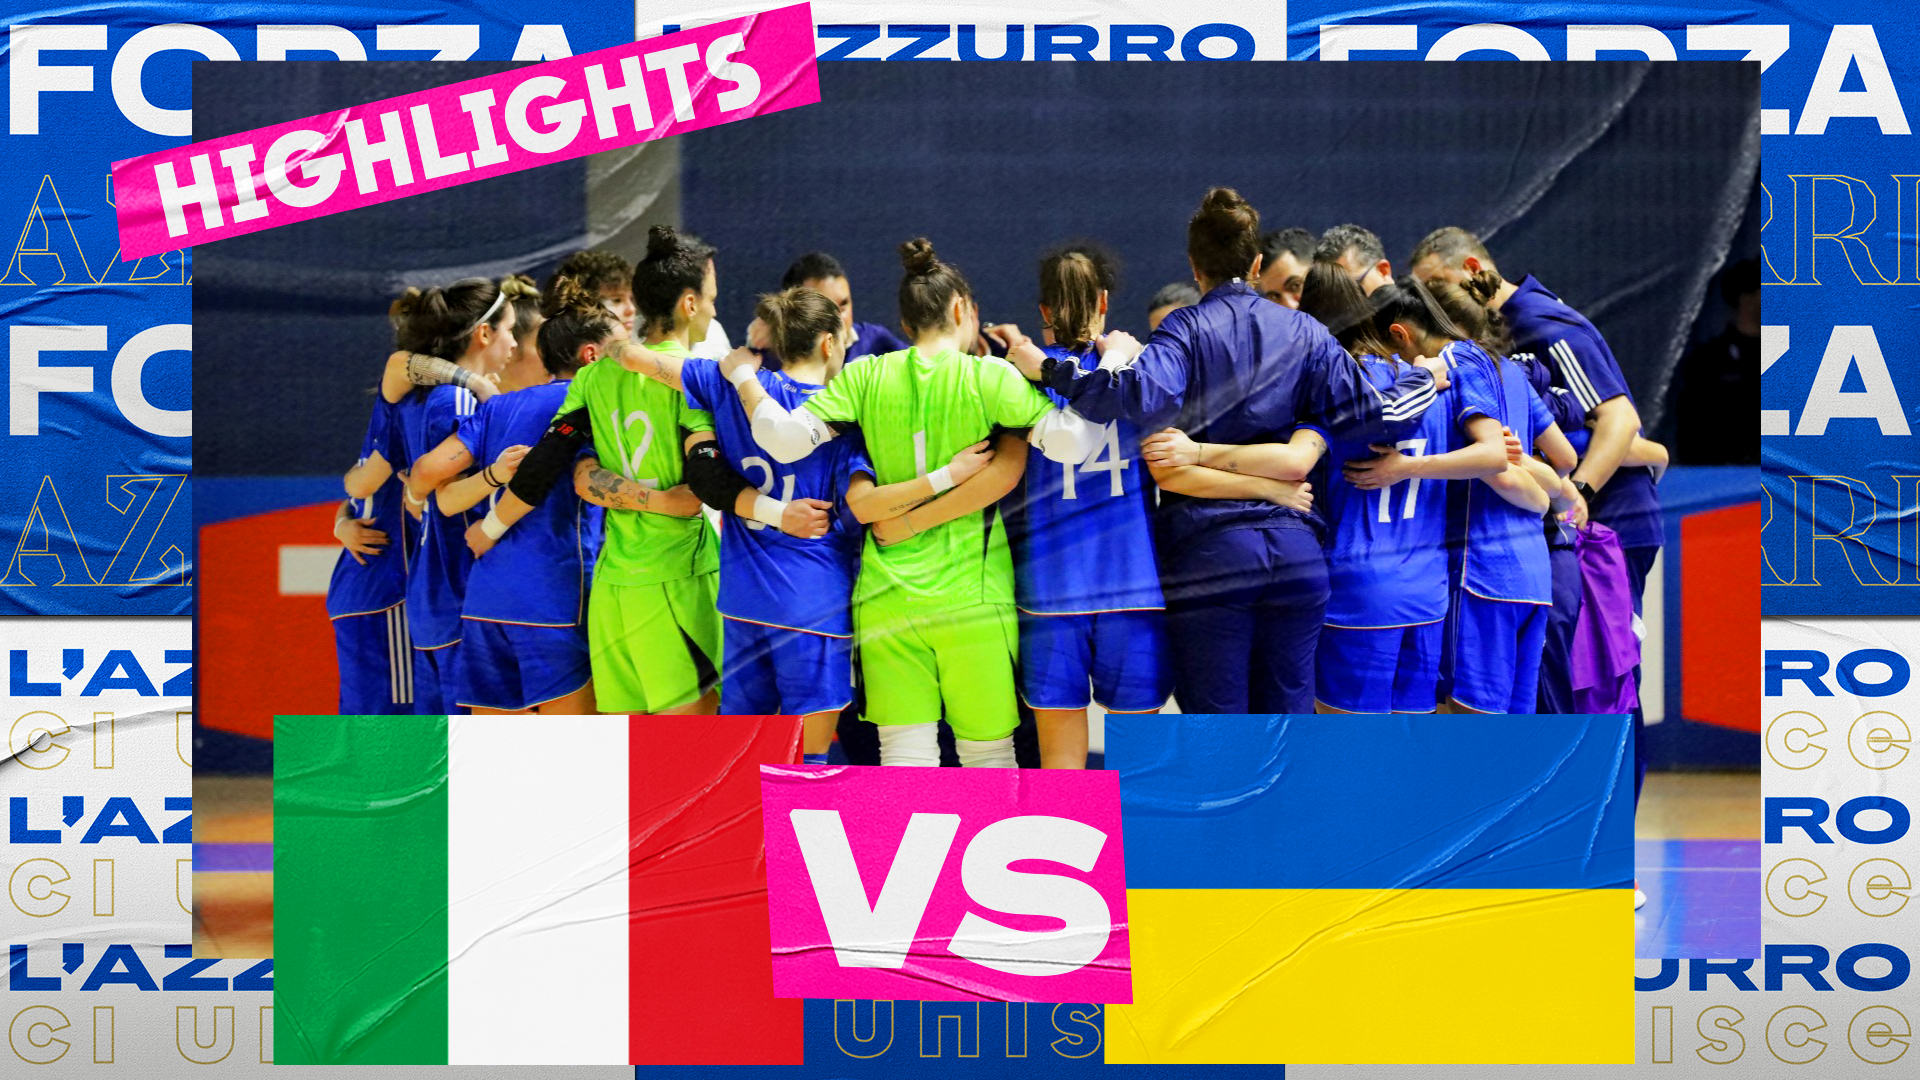 Italia stellare, 6 gol all’Ucraina nell’amichevole di Taranto